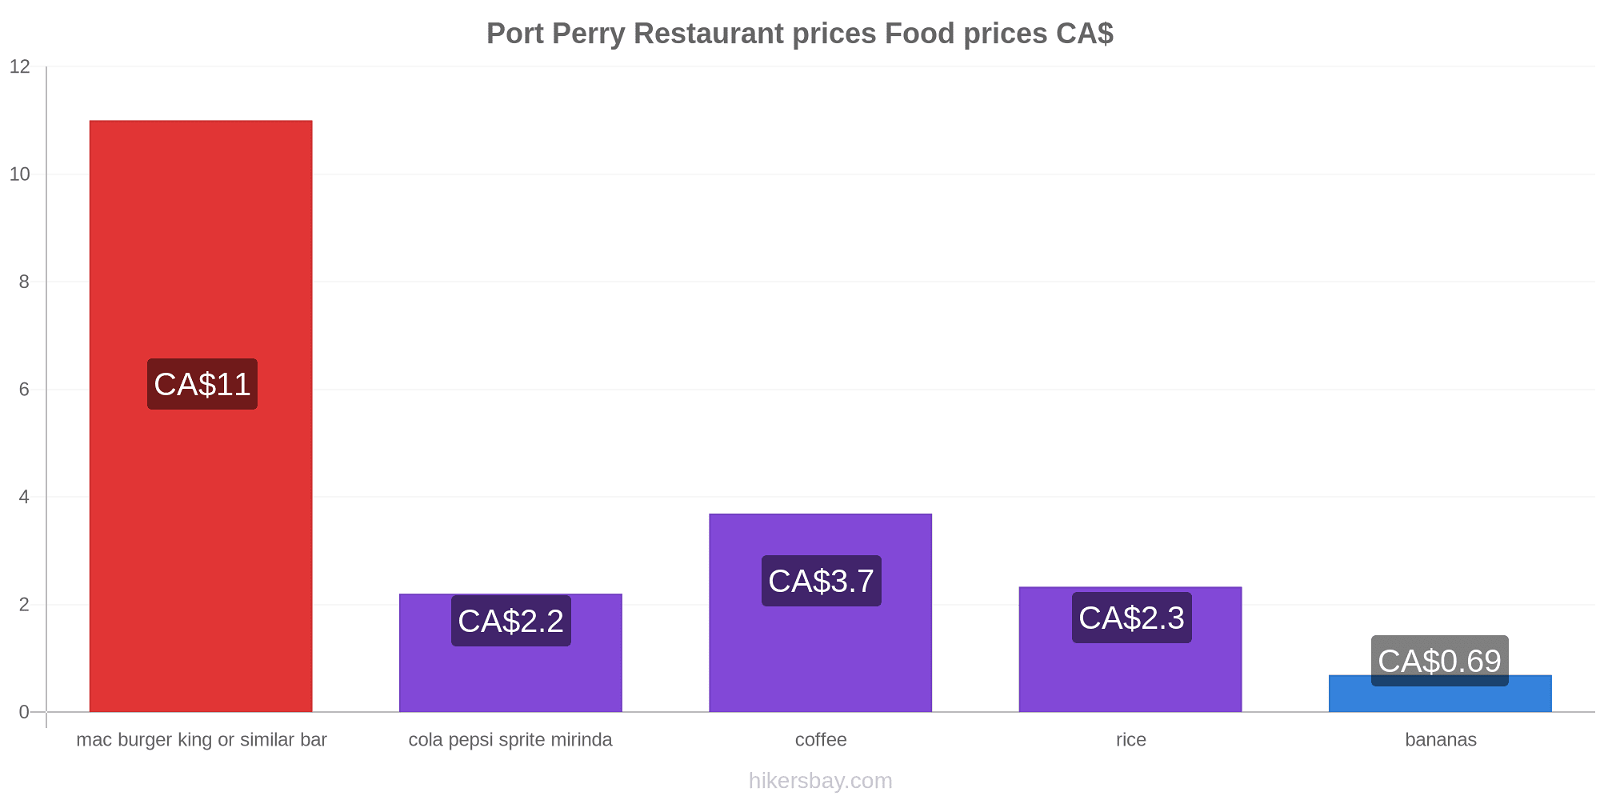 Port Perry price changes hikersbay.com